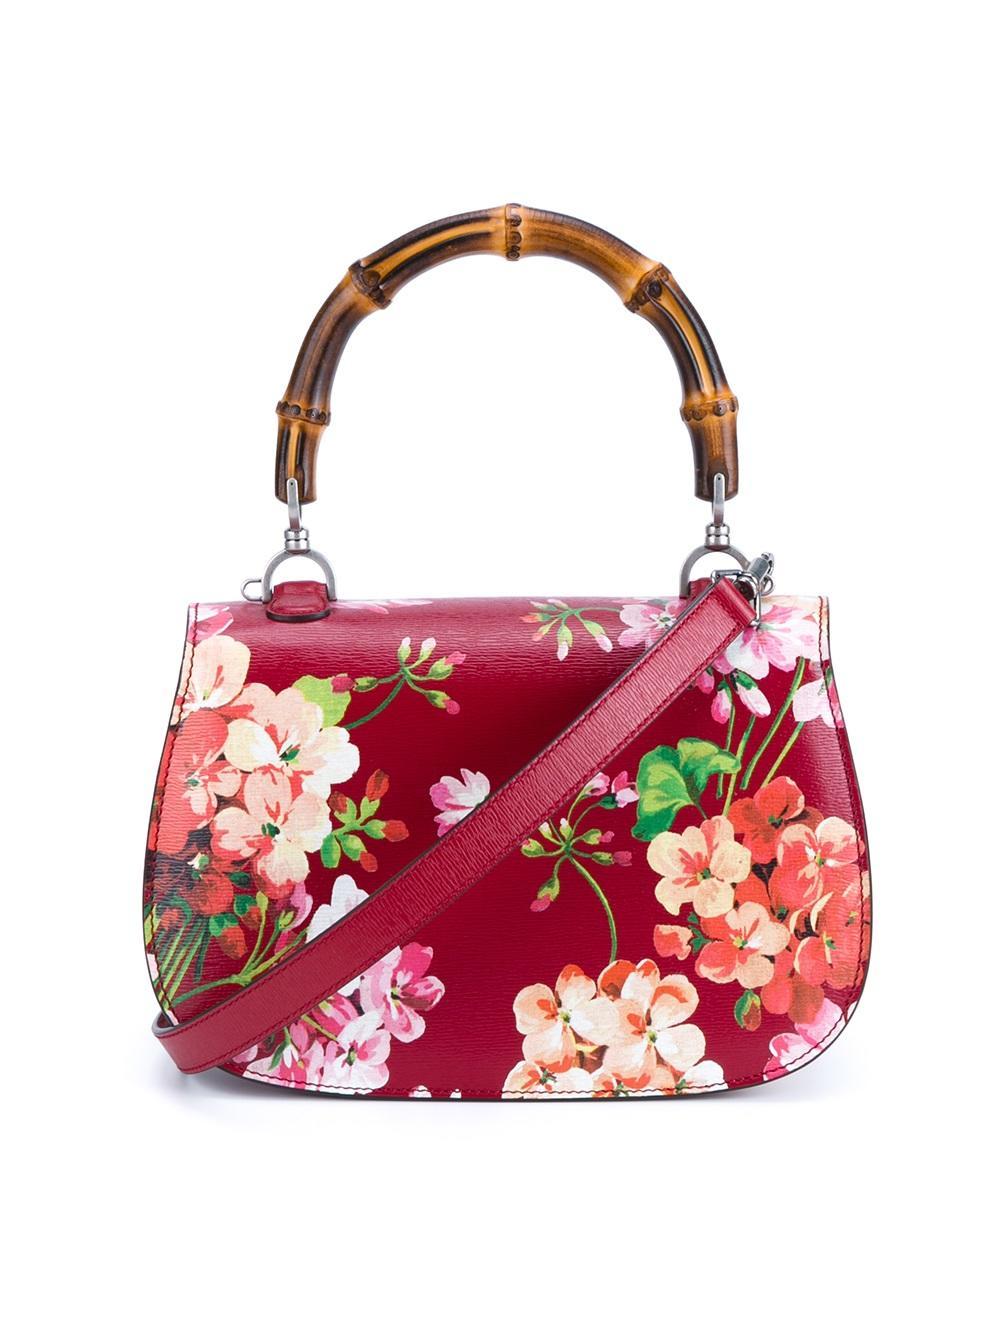 Lyst - Gucci Floral Print Shoulder Bag in Red